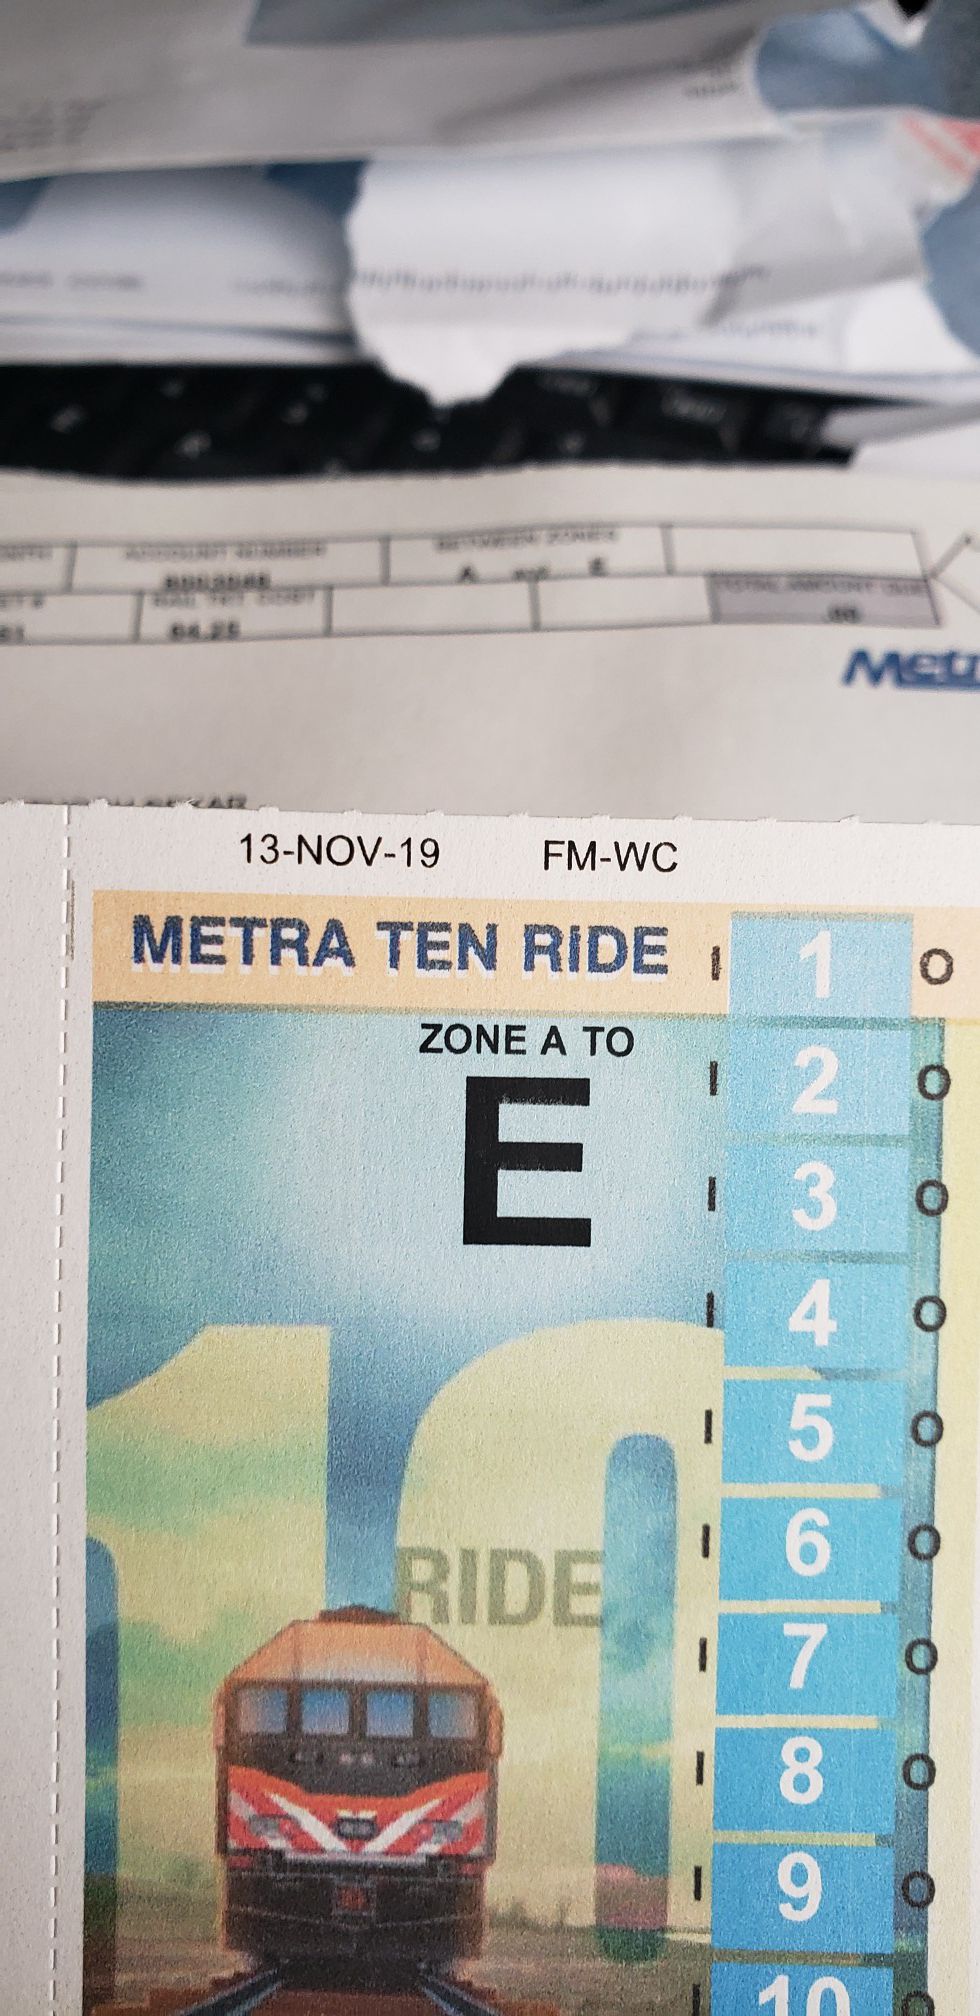 Metra 10 ride tickets...